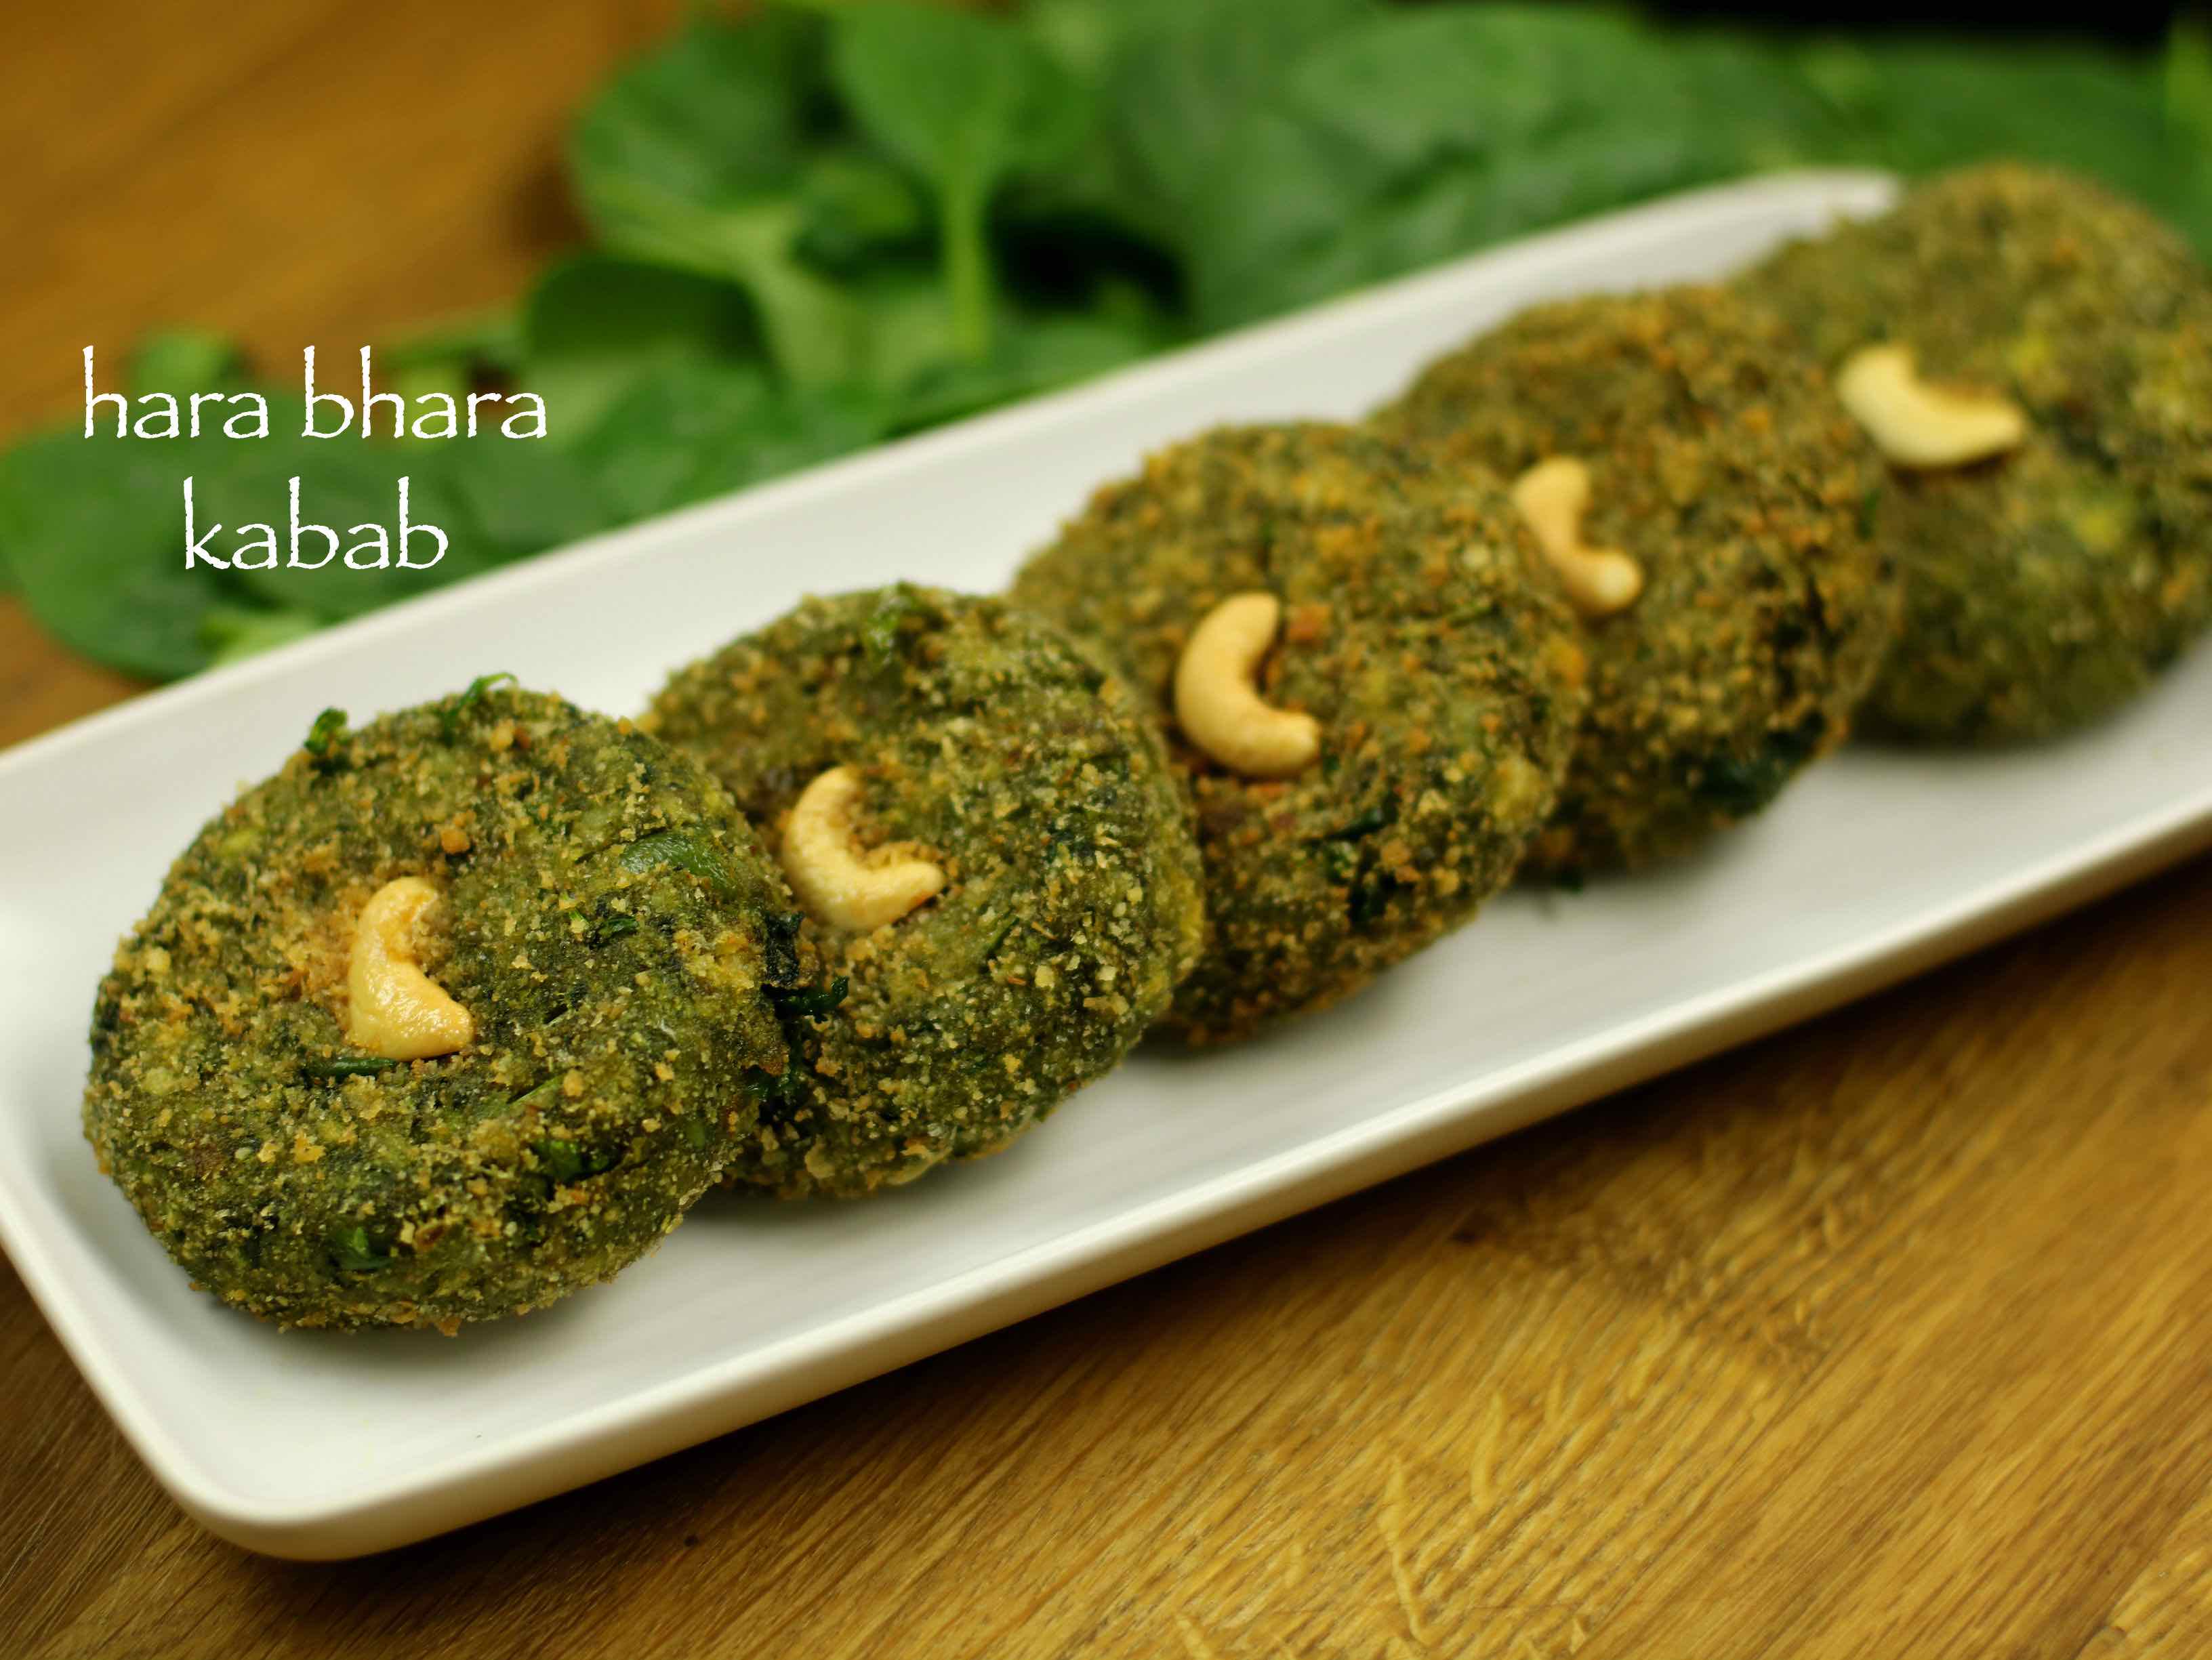 hara bhara kabab recipe veg hara bhara kabab veg kabab recipe